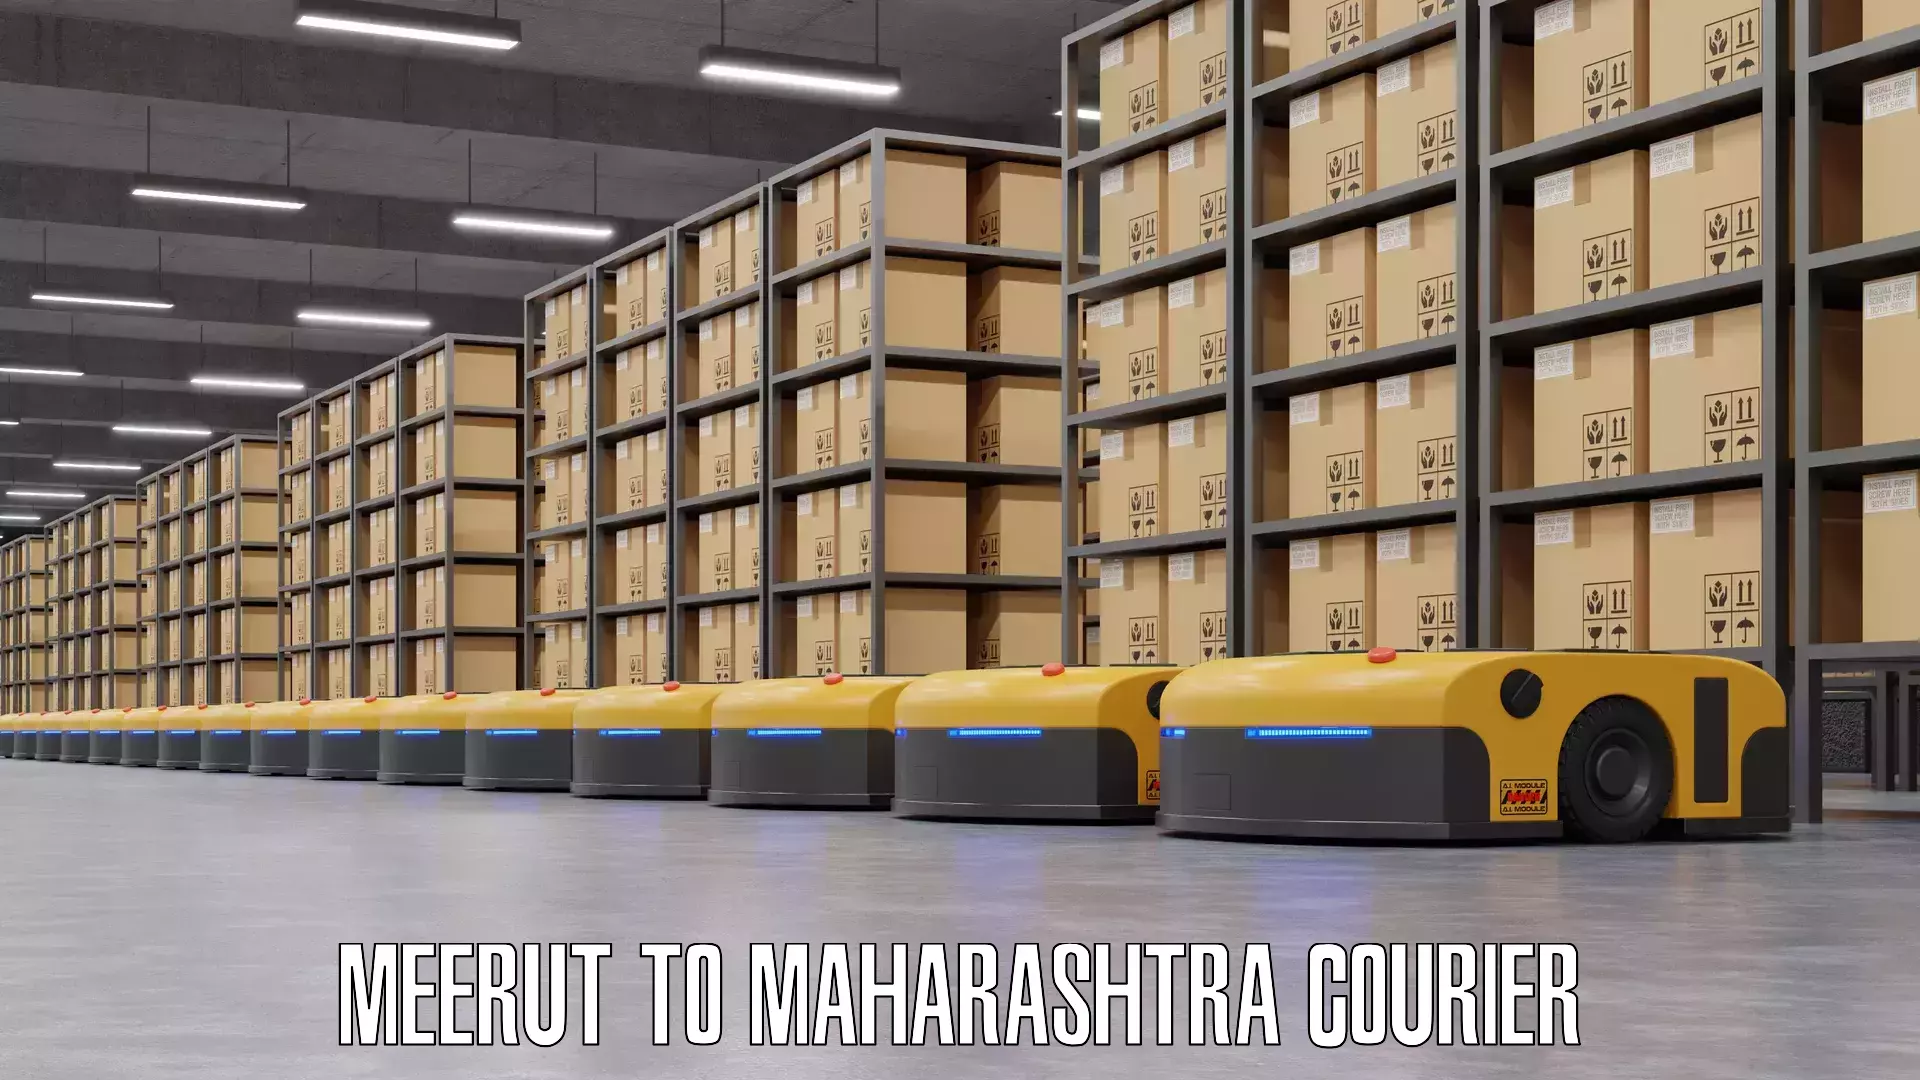 Baggage shipping experts Meerut to Maharashtra